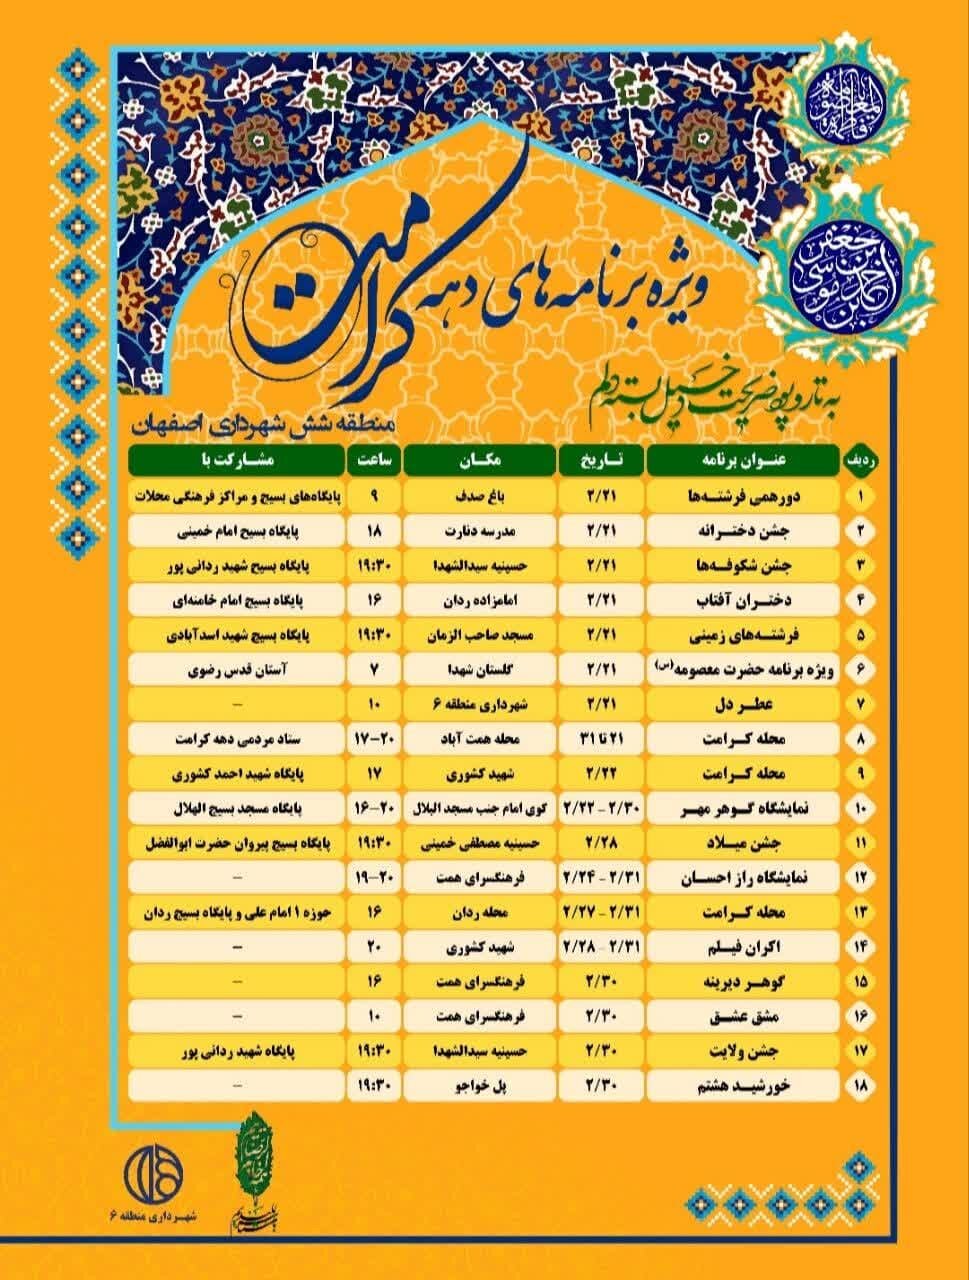 اجرای ۱۸ عنوان برنامه ویژه دهه کرامت در منطقه ۶ اصفهان/ «خورشید هشتم» مهمان پل خواجو